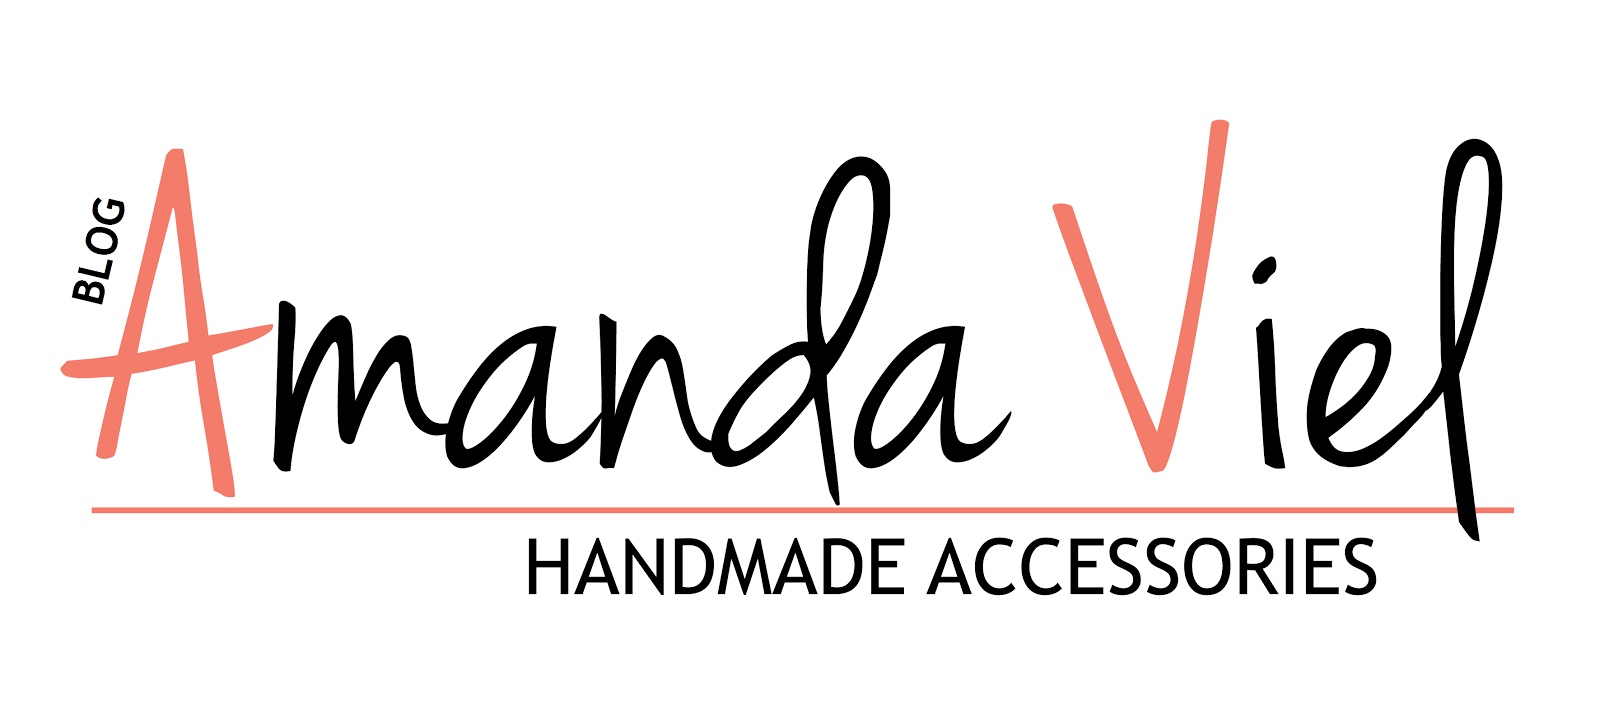 Amanda Viel Handmade Accessories - confeccionados artesanalmente e com design próprio